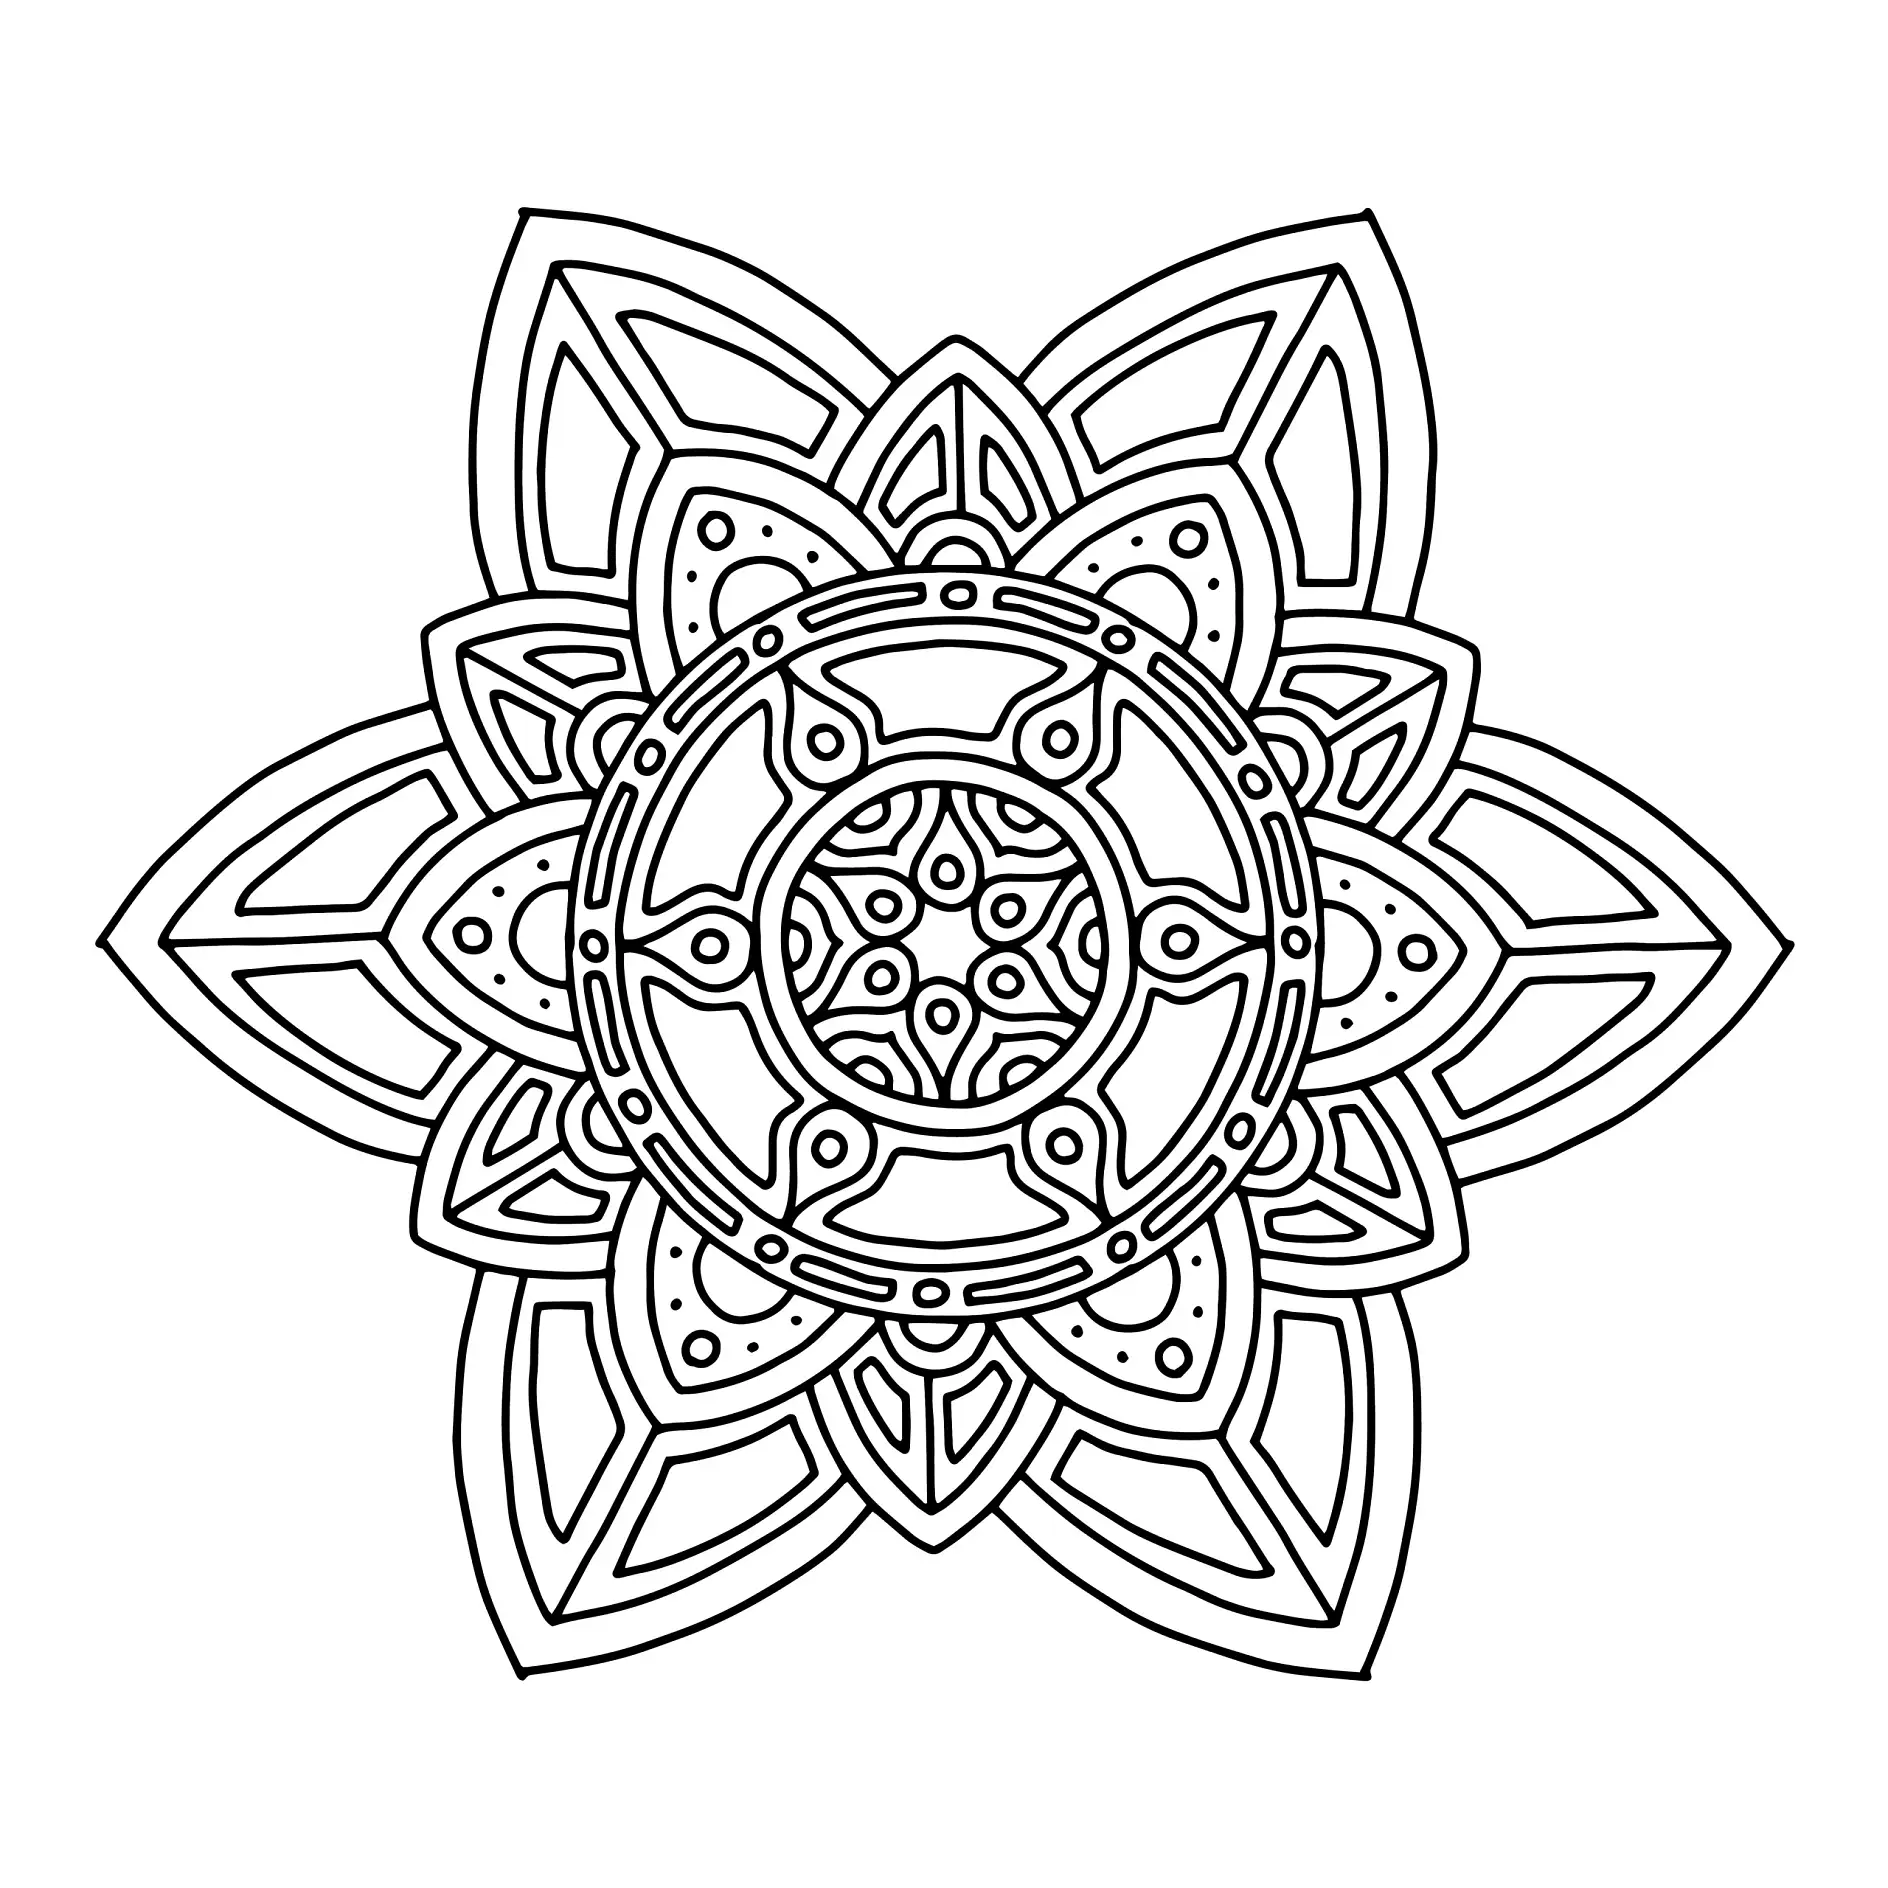 Ausmalbild Mandala mit geometrischen und floralen Mustern